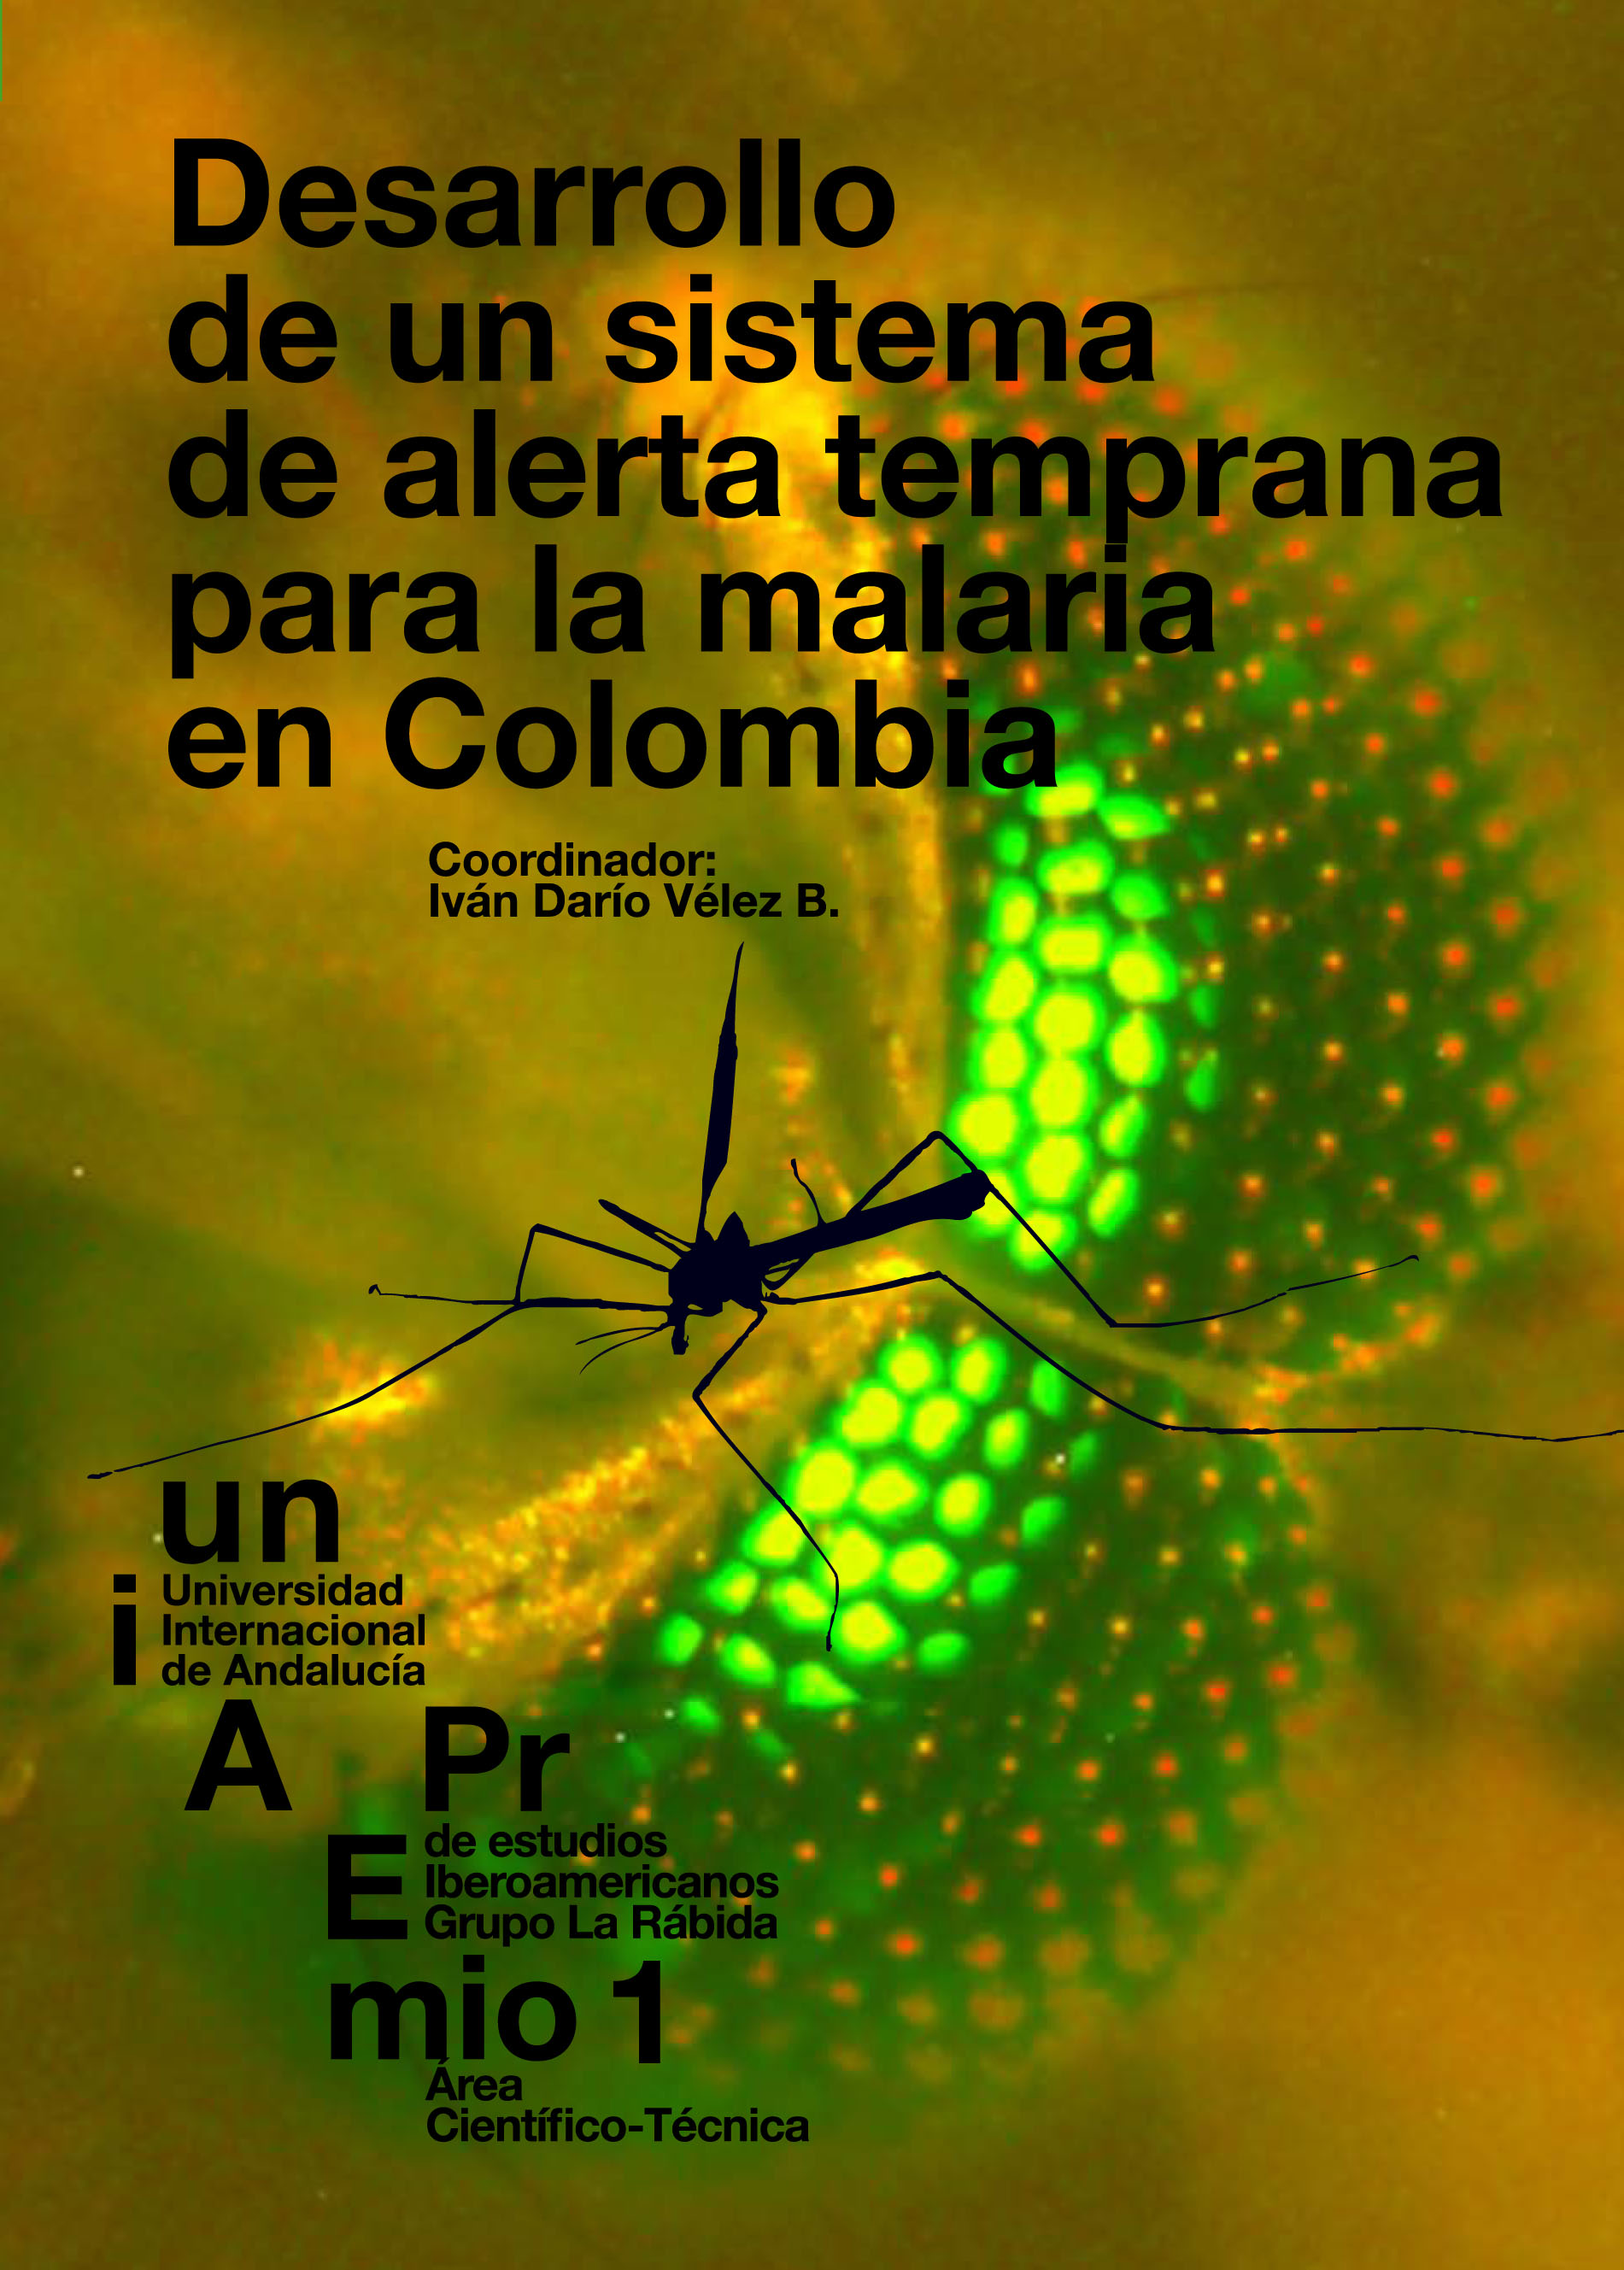 Fotografía de un mosquito y larvas del mismo, portadores de la malaria 